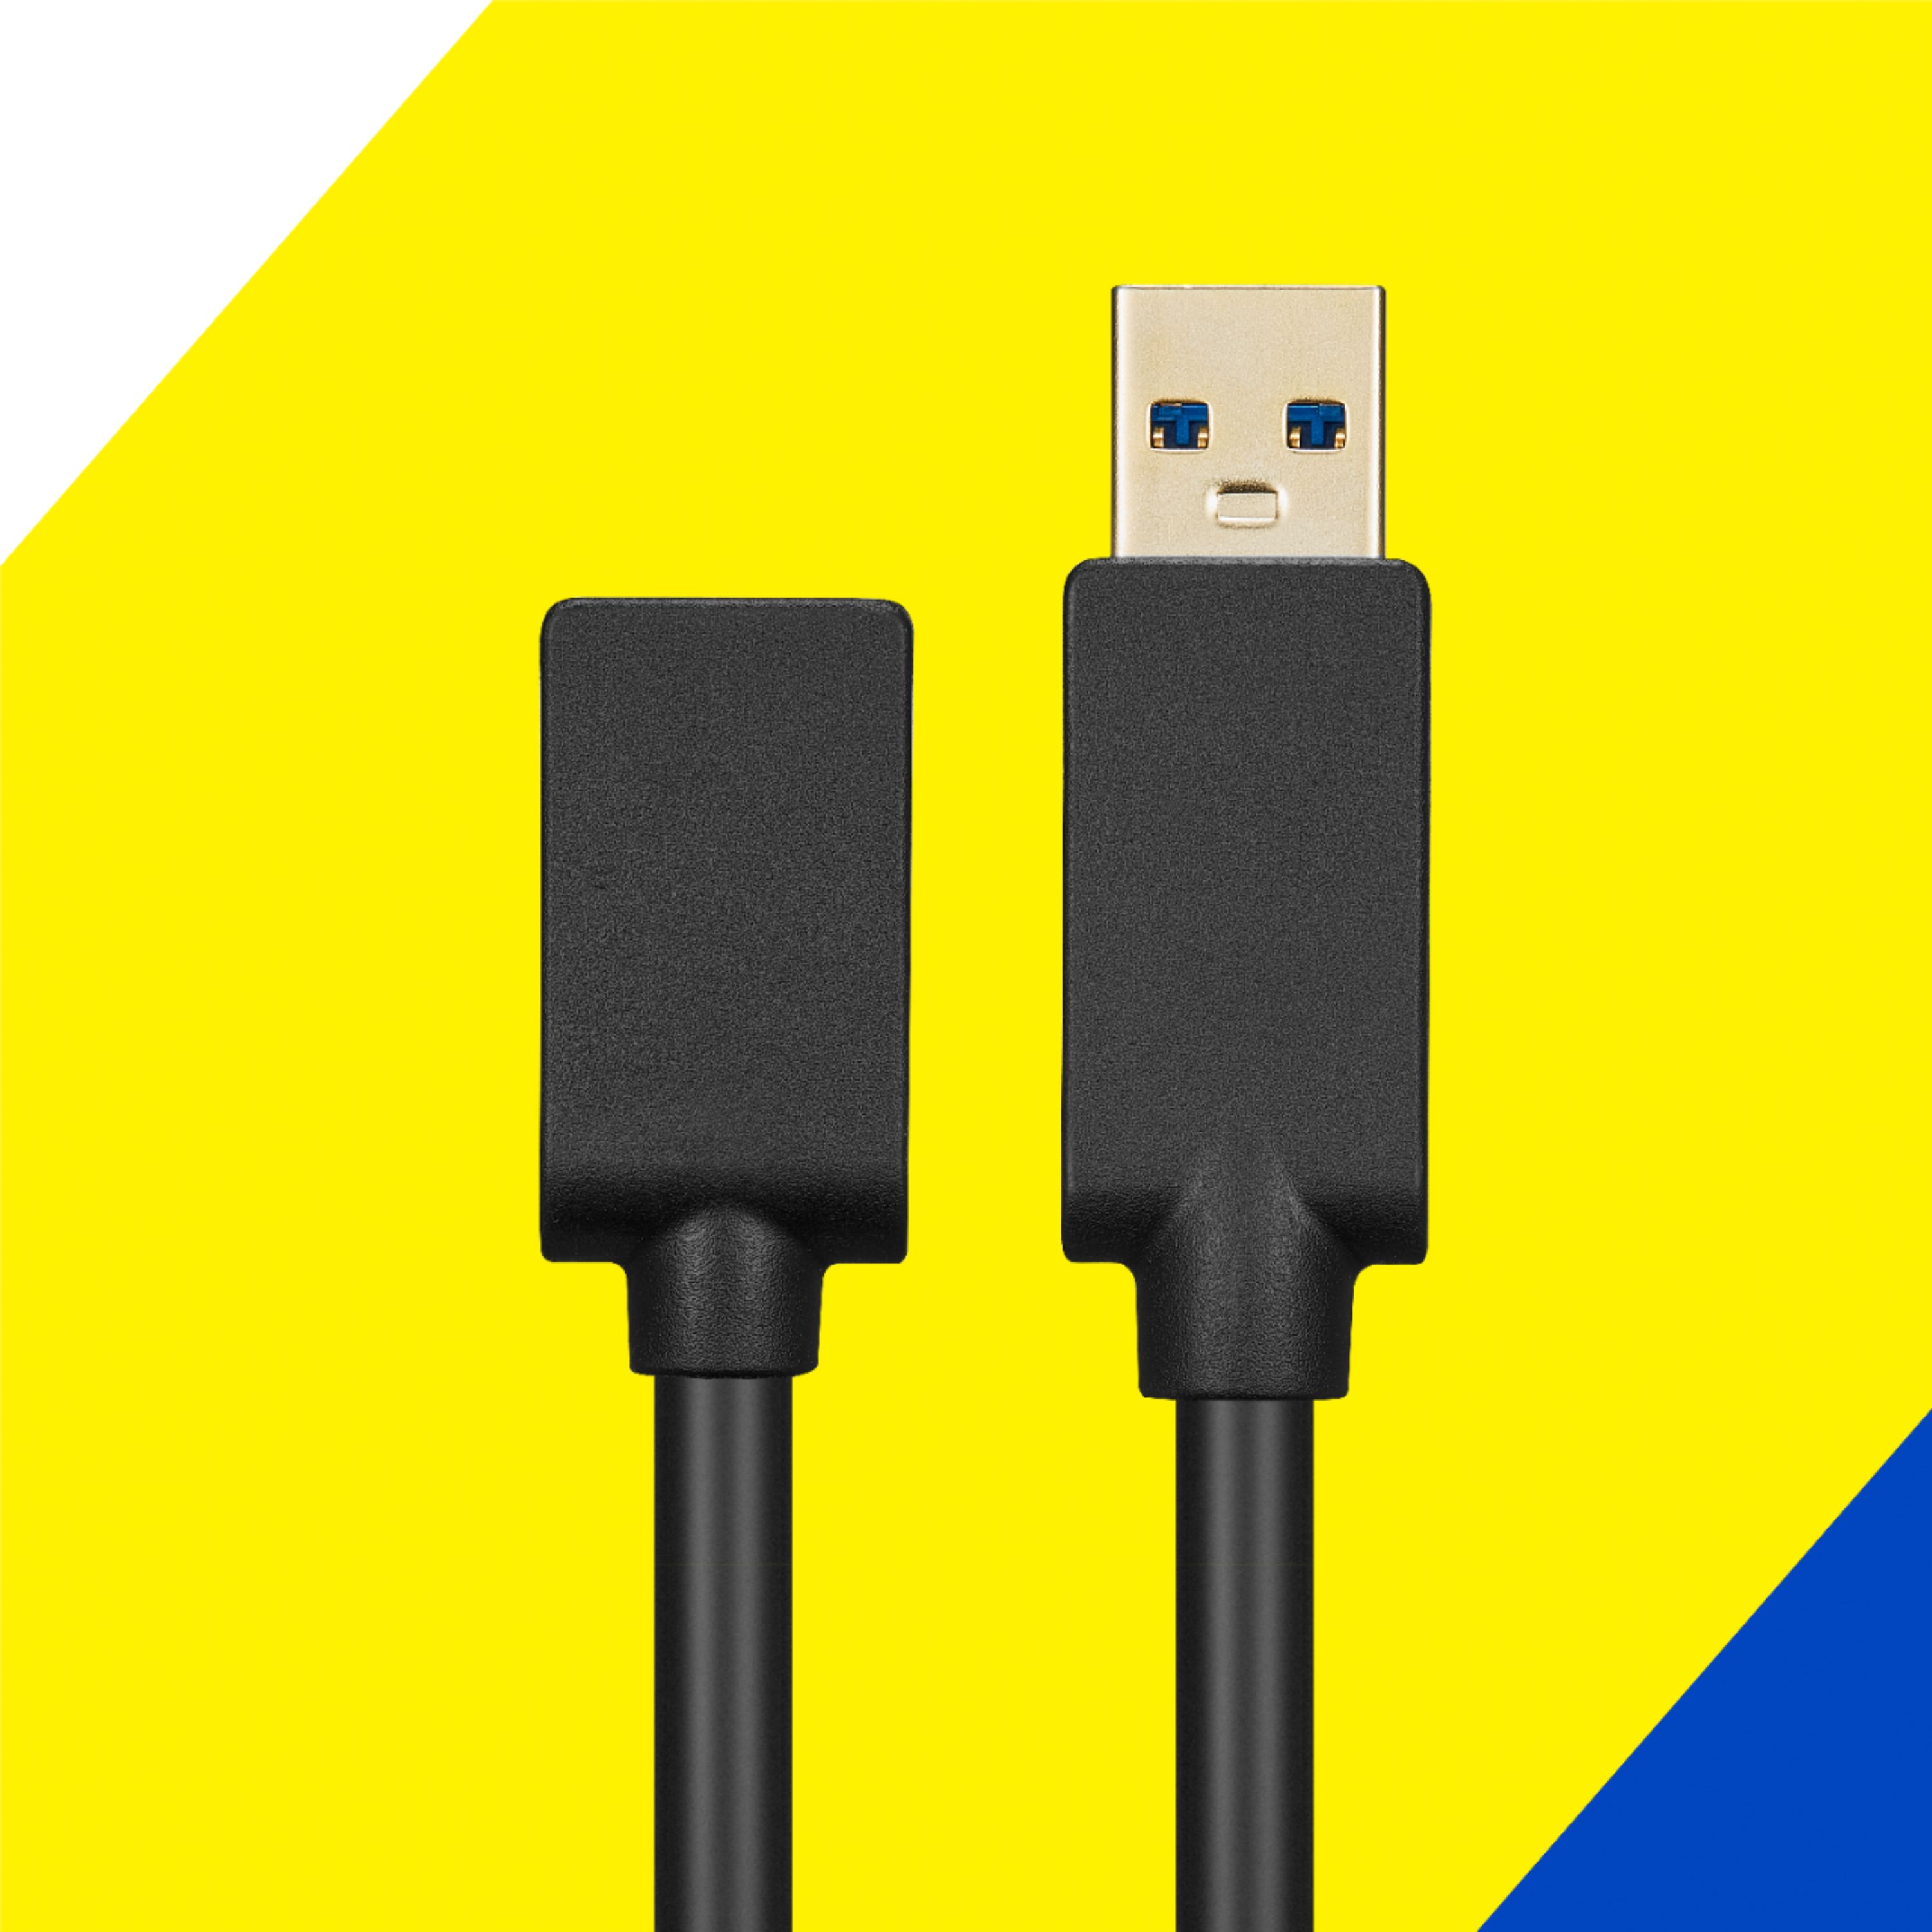 2 câbles USB-A 3.0 femelle - USB-C mâle, USB-C